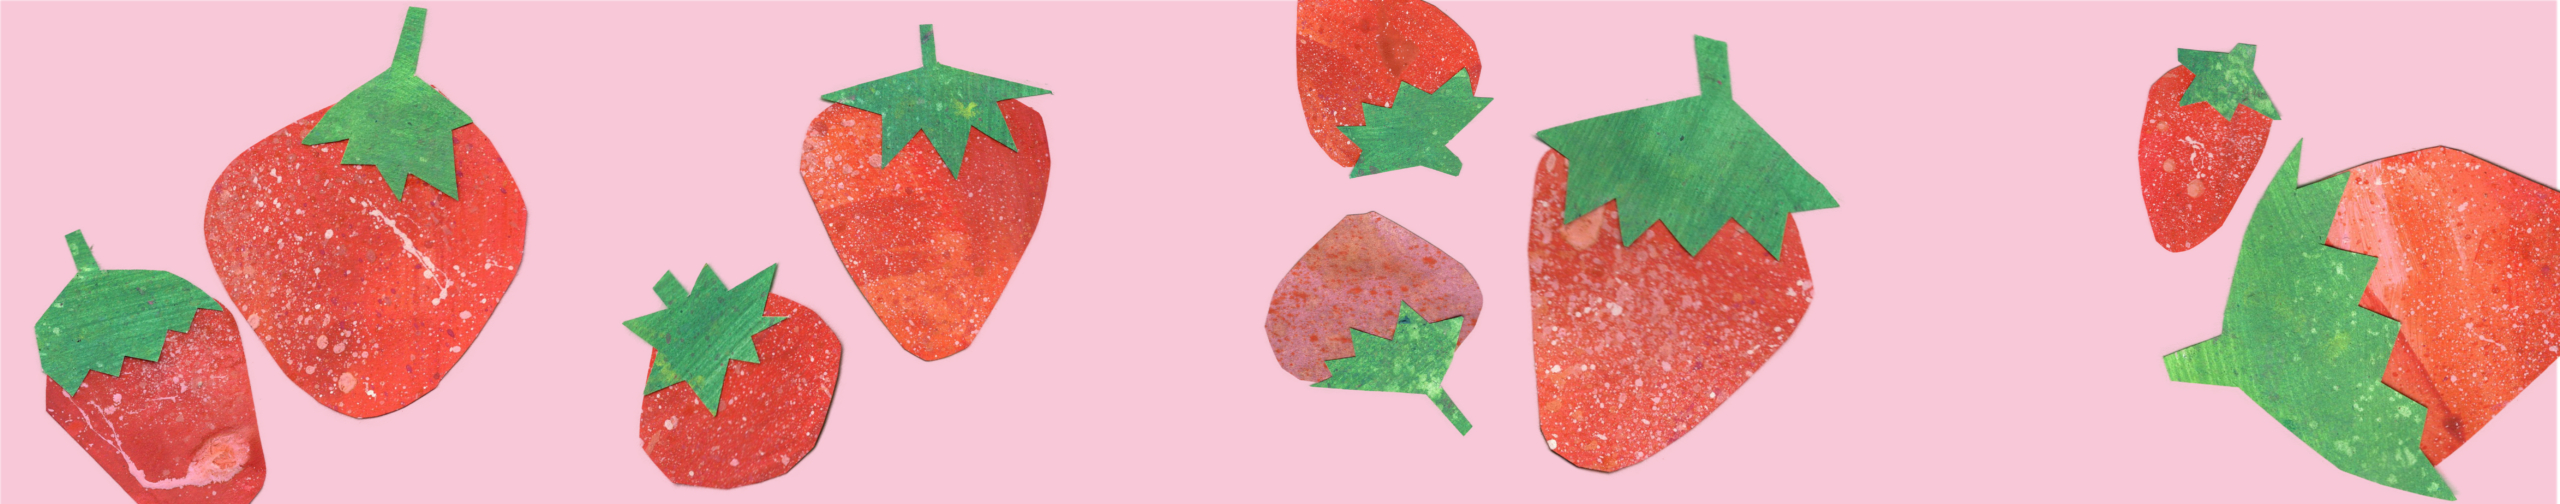 Sommerliches Banner mit collagierten Erdbeeren.